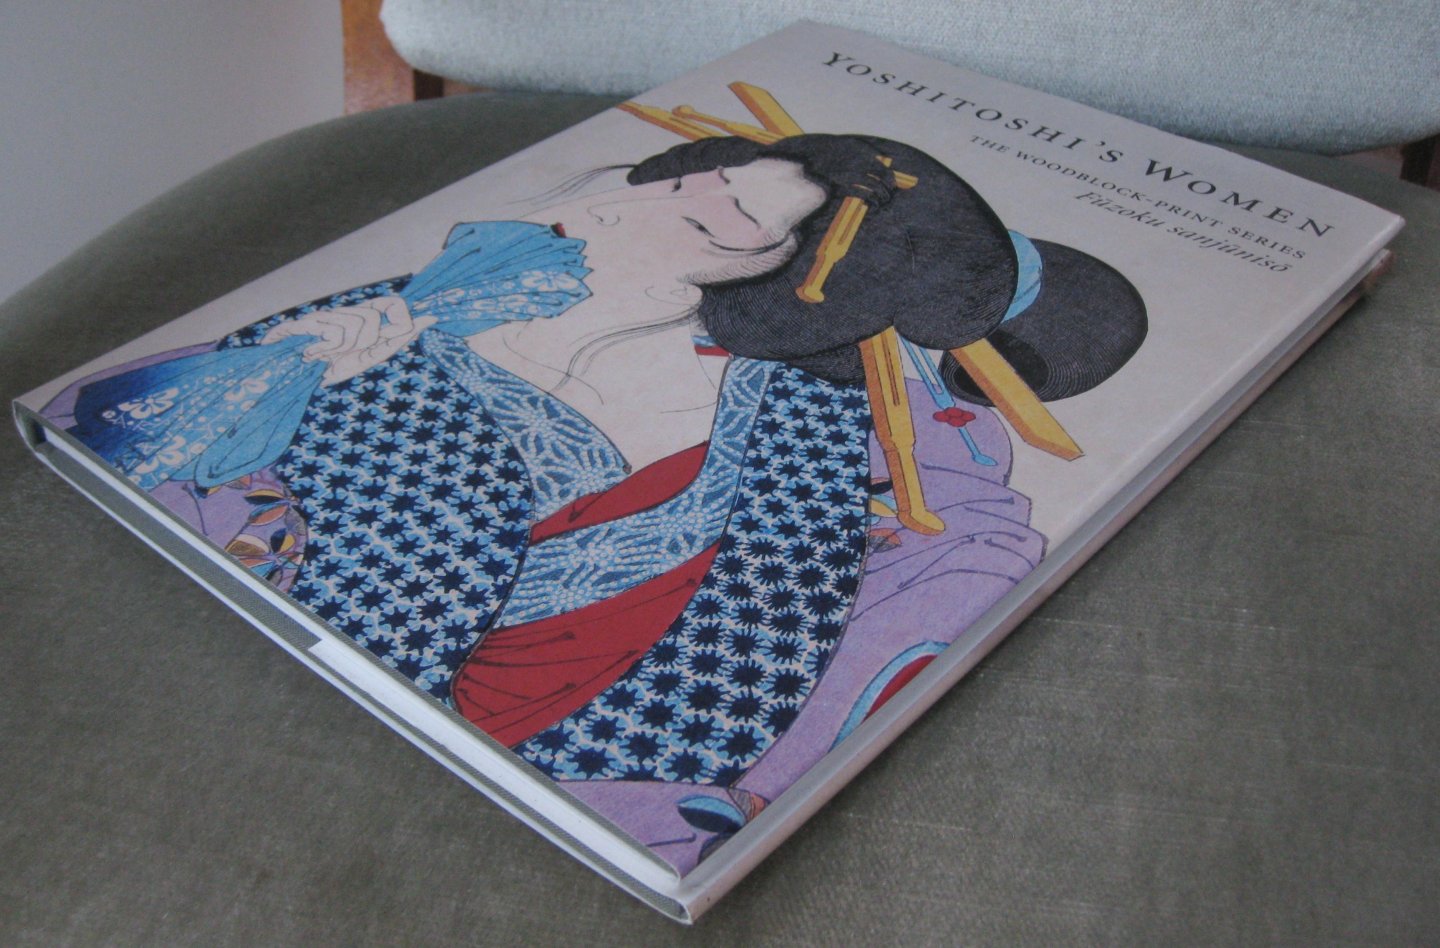 Stevenson, John  -    fuzoku sanjuniso  -  yoshitoshi,  fuzoku sanjuniso  -  fuzoku sanjuniso,  yoshitoshi - yoshitoshi's women   -  The Woodblock-print series